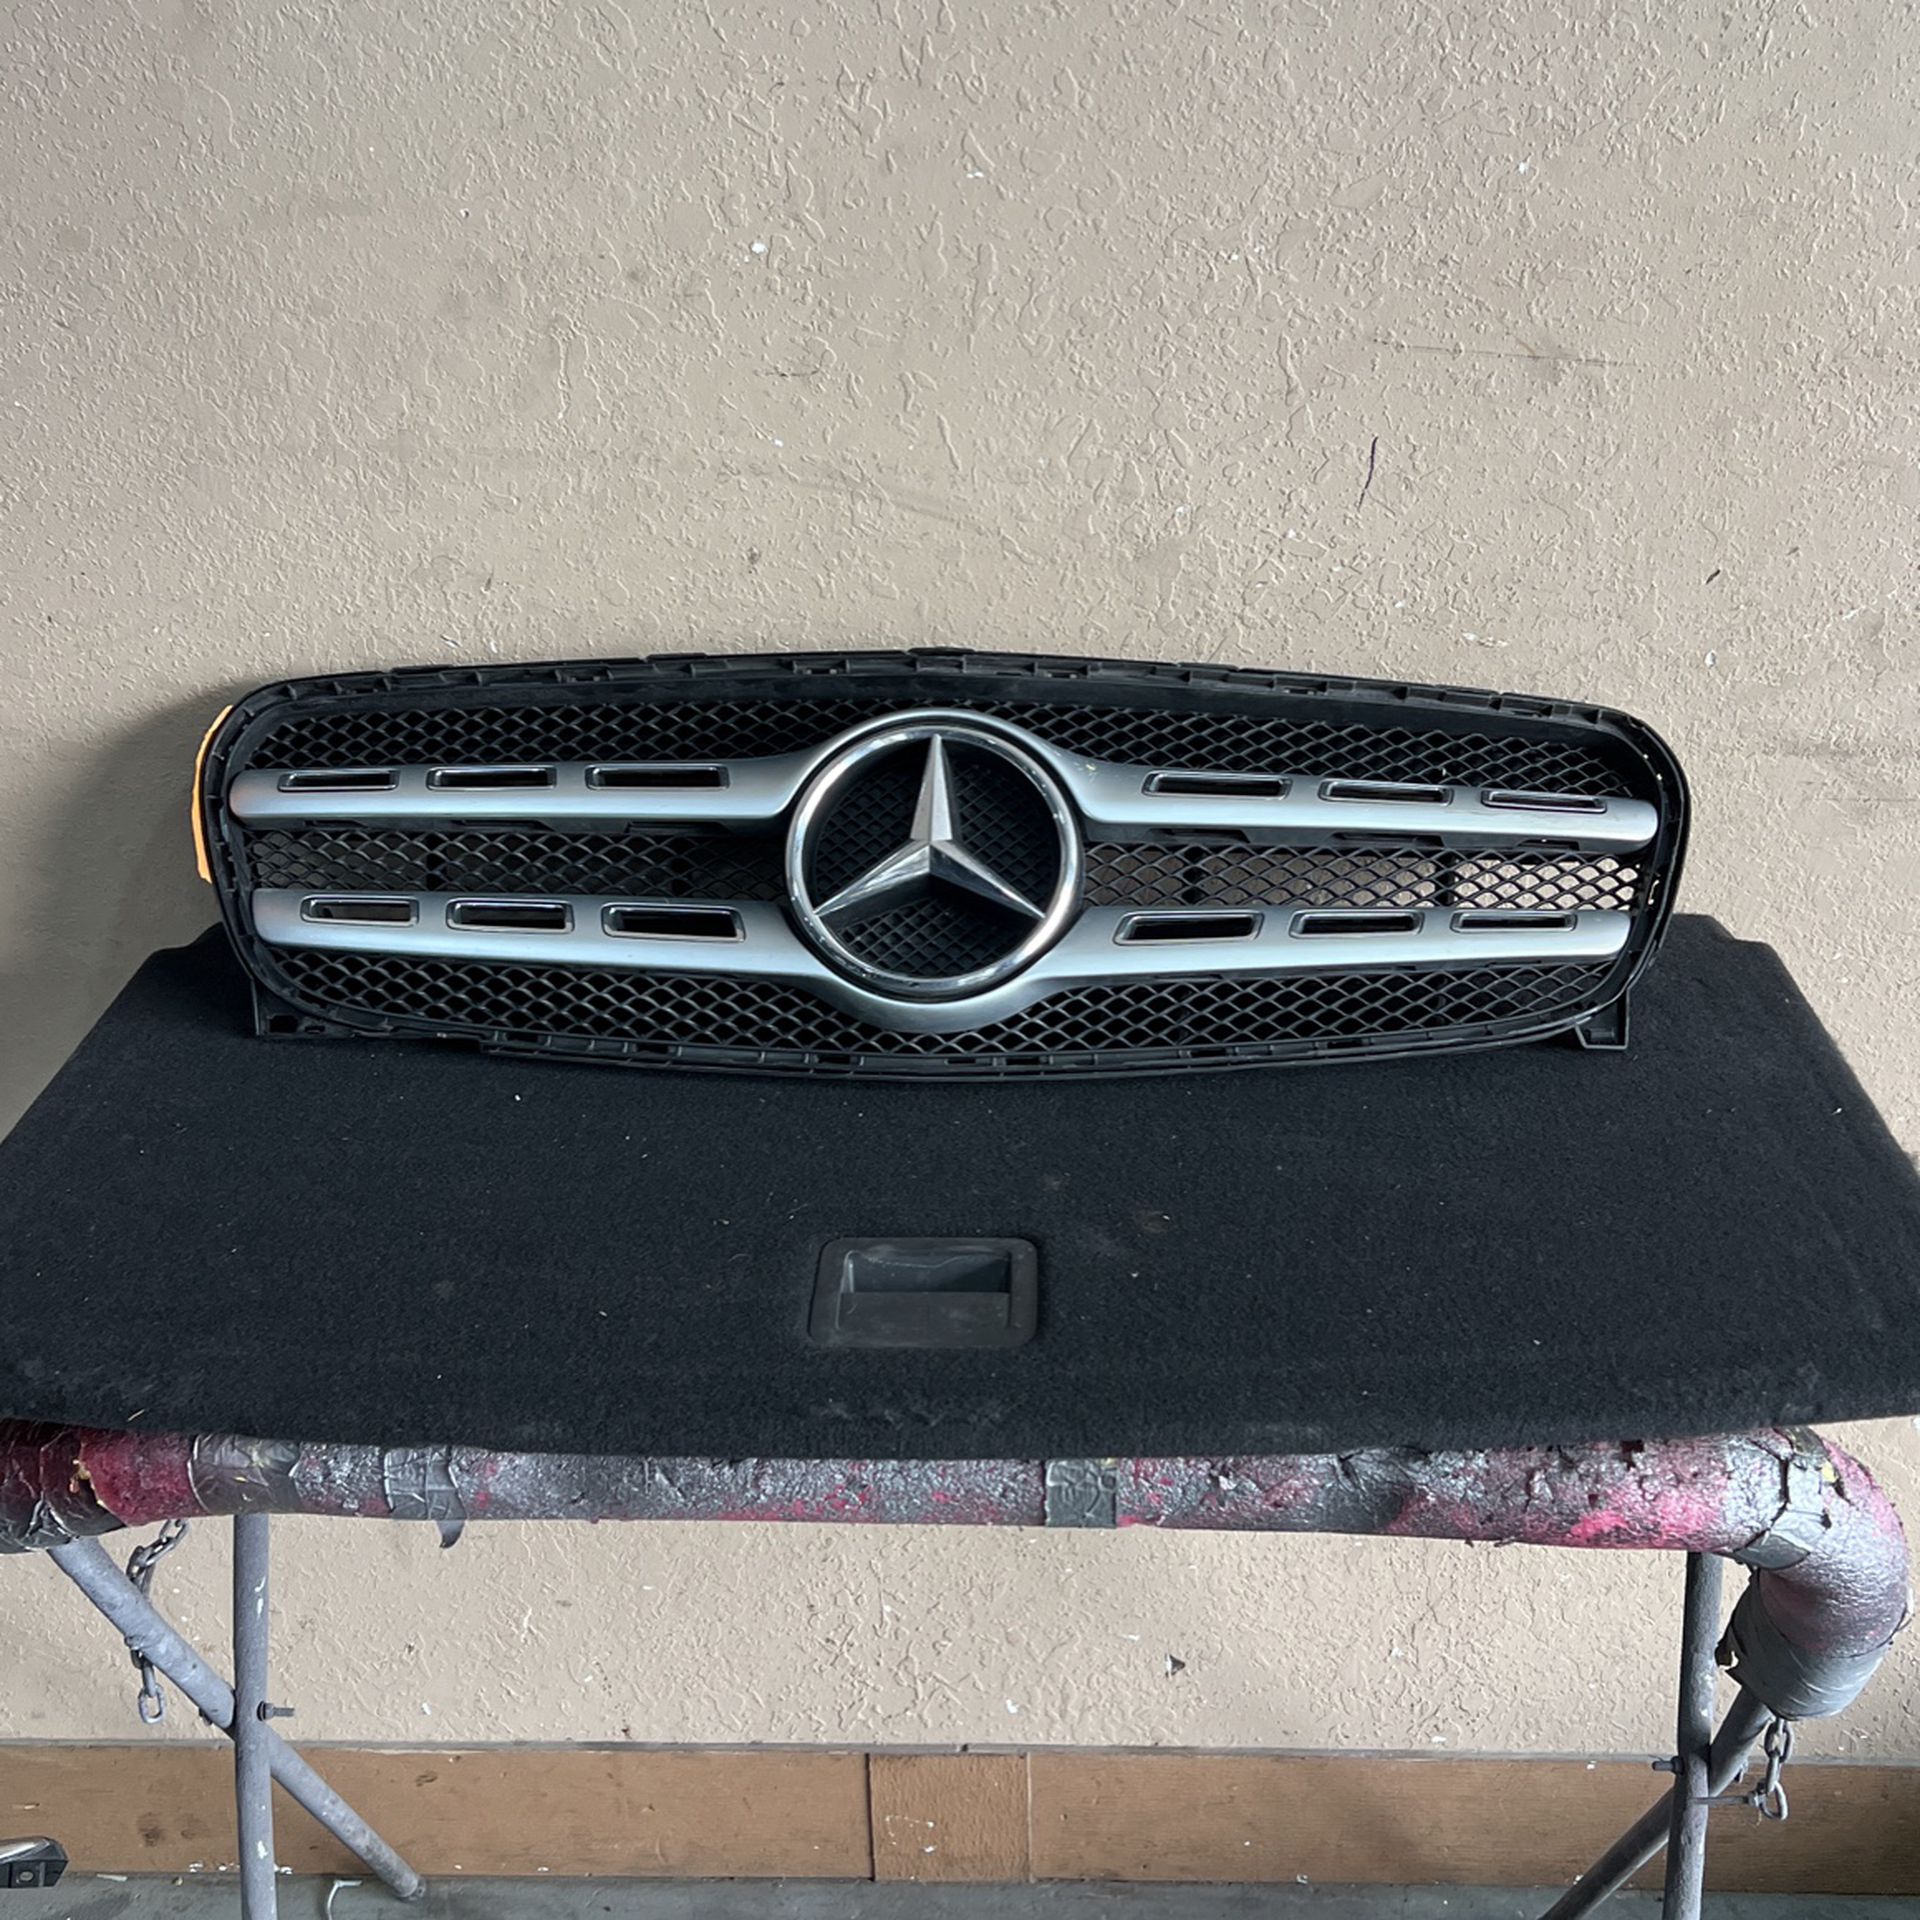 (357) 18-20 Mercedes Benz Gla250 Gla45 Gla Front Grille Grill Gril Delantero De Alante Part Parts 2018 2019 2020 